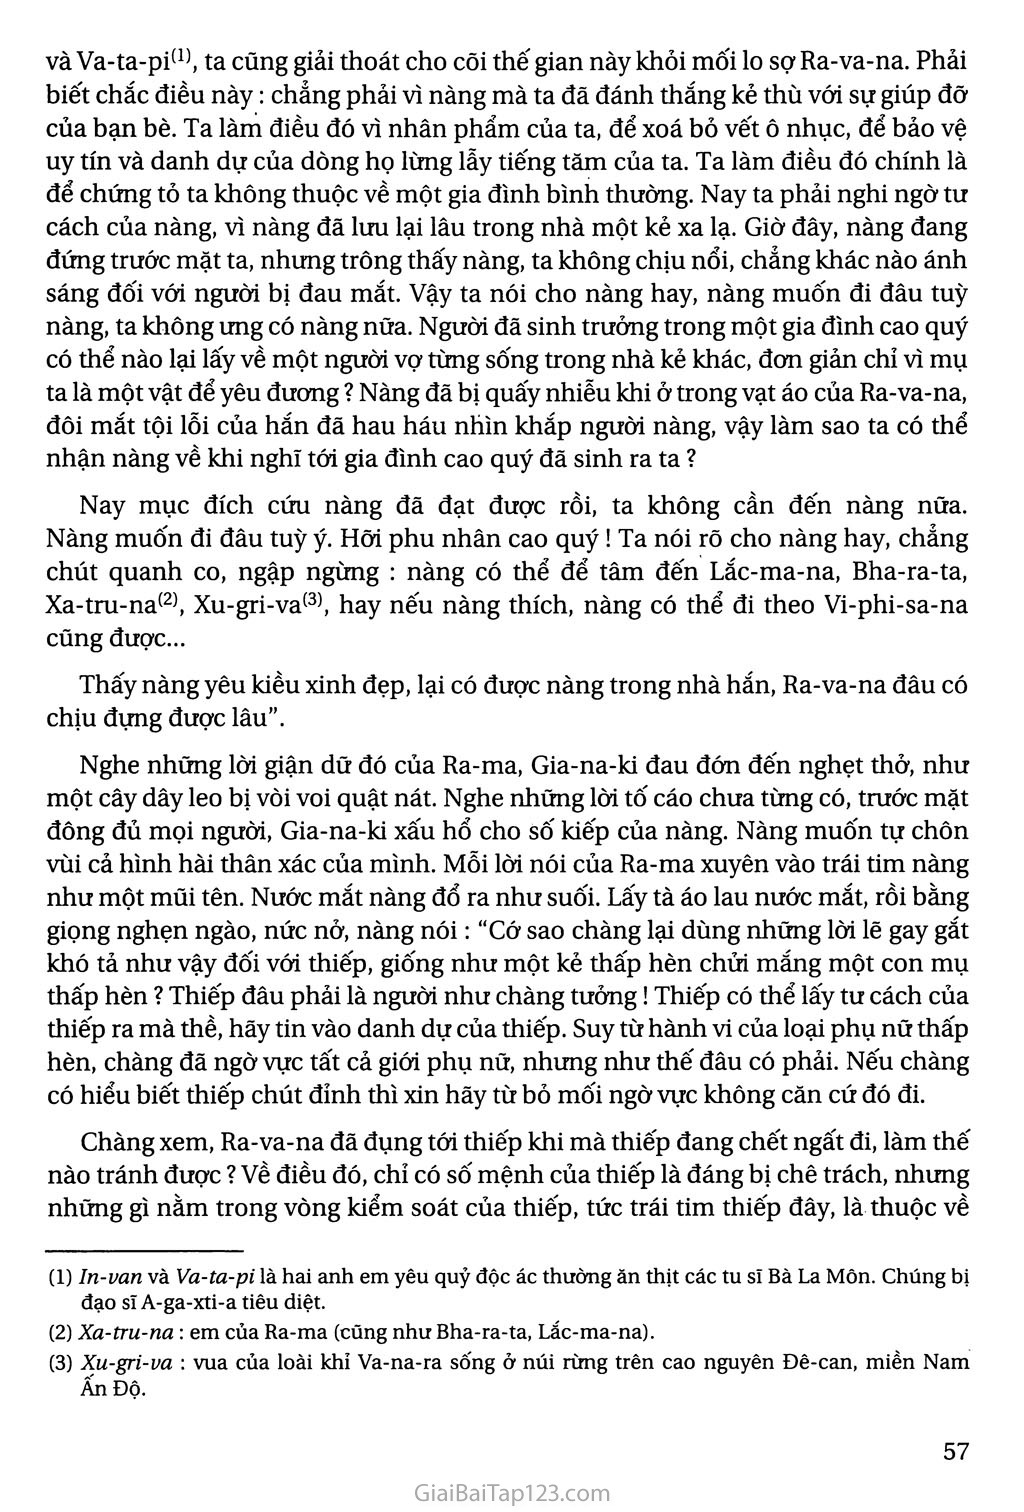 Ra - ma buộc tội (tích Ra - ma - ya - na - sử thi Ấn Độ) trang 3